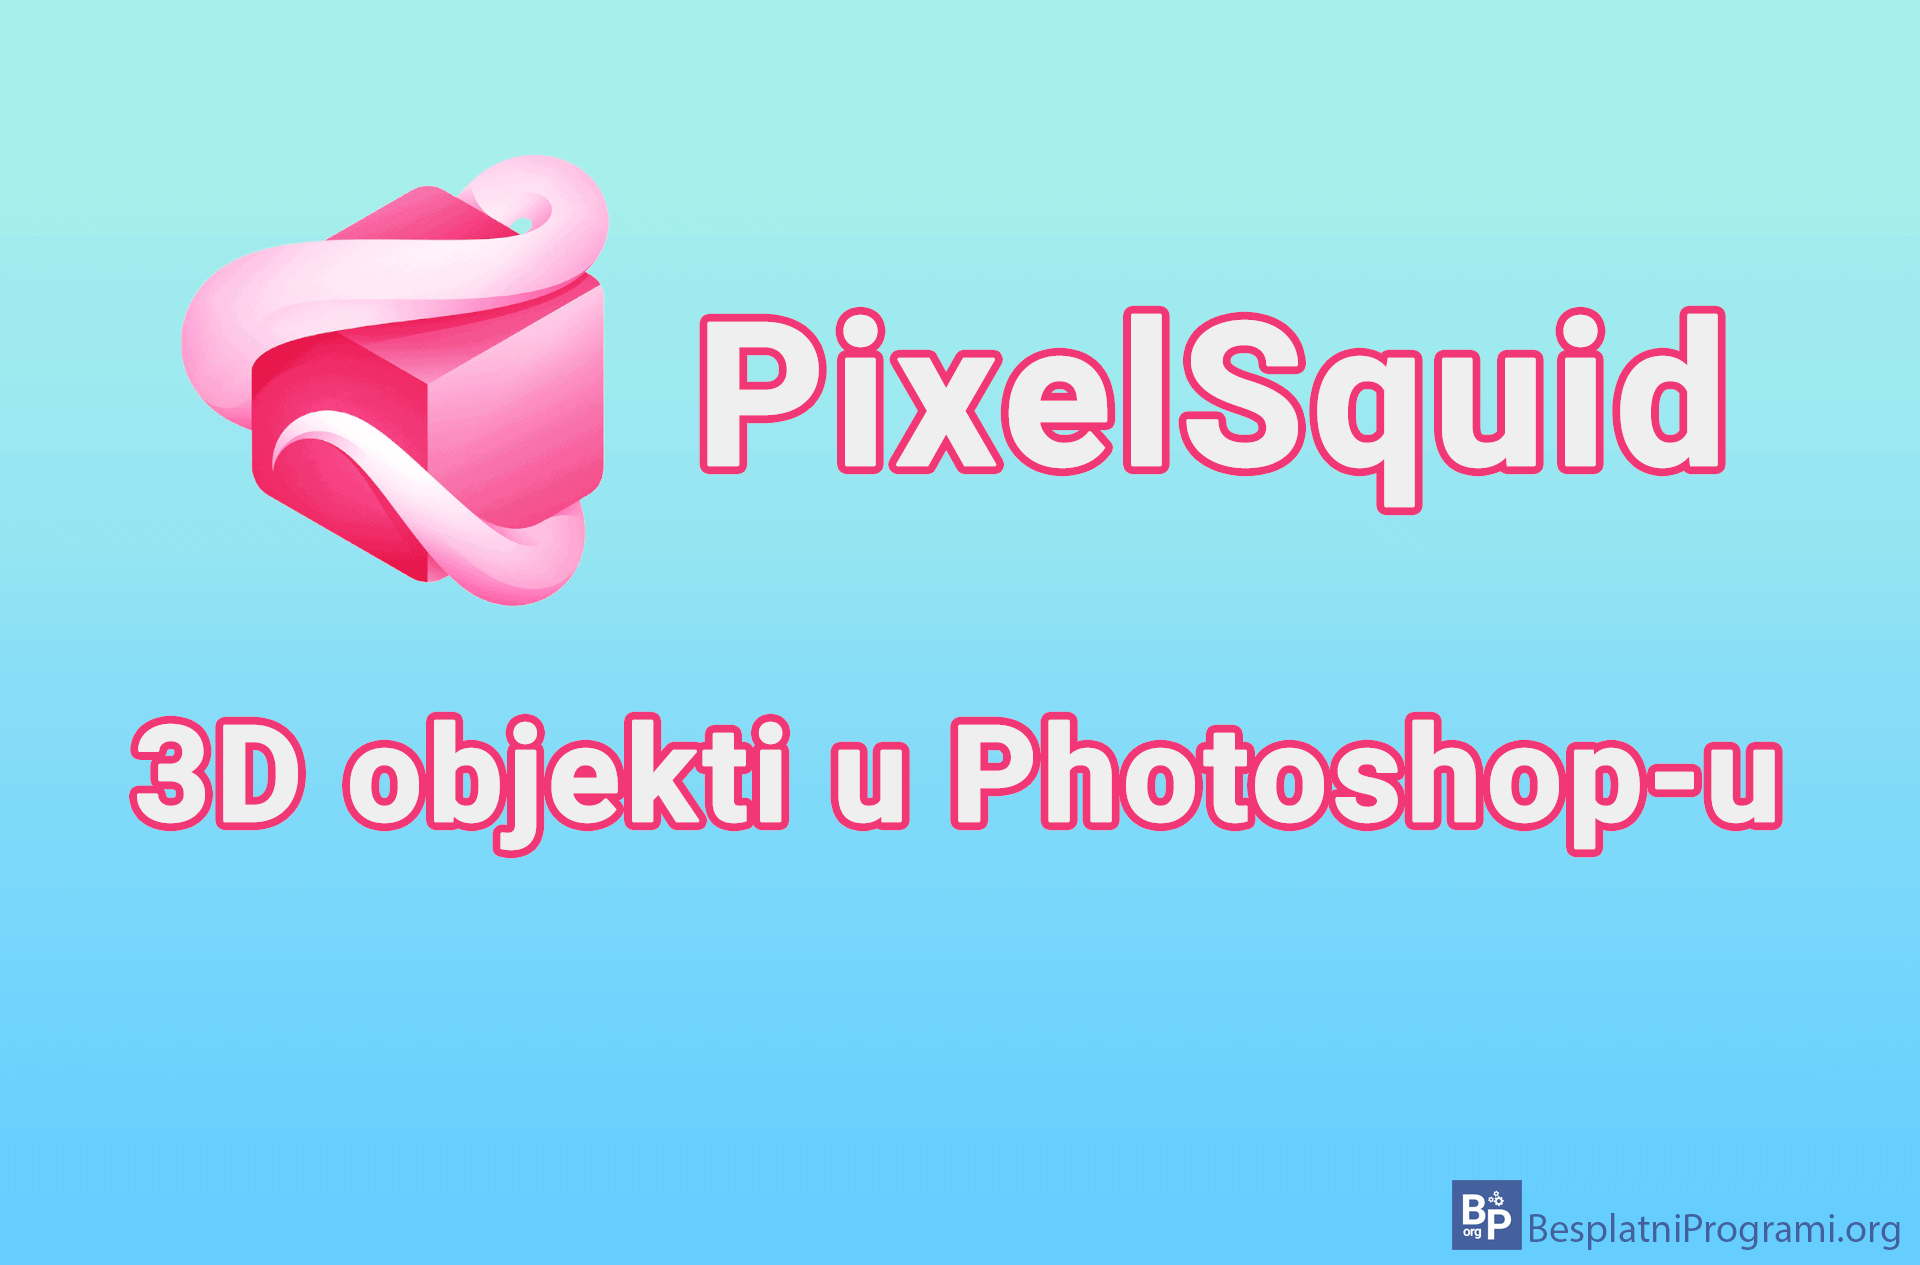 PixelSquid – 3D objekti u Photoshop-u